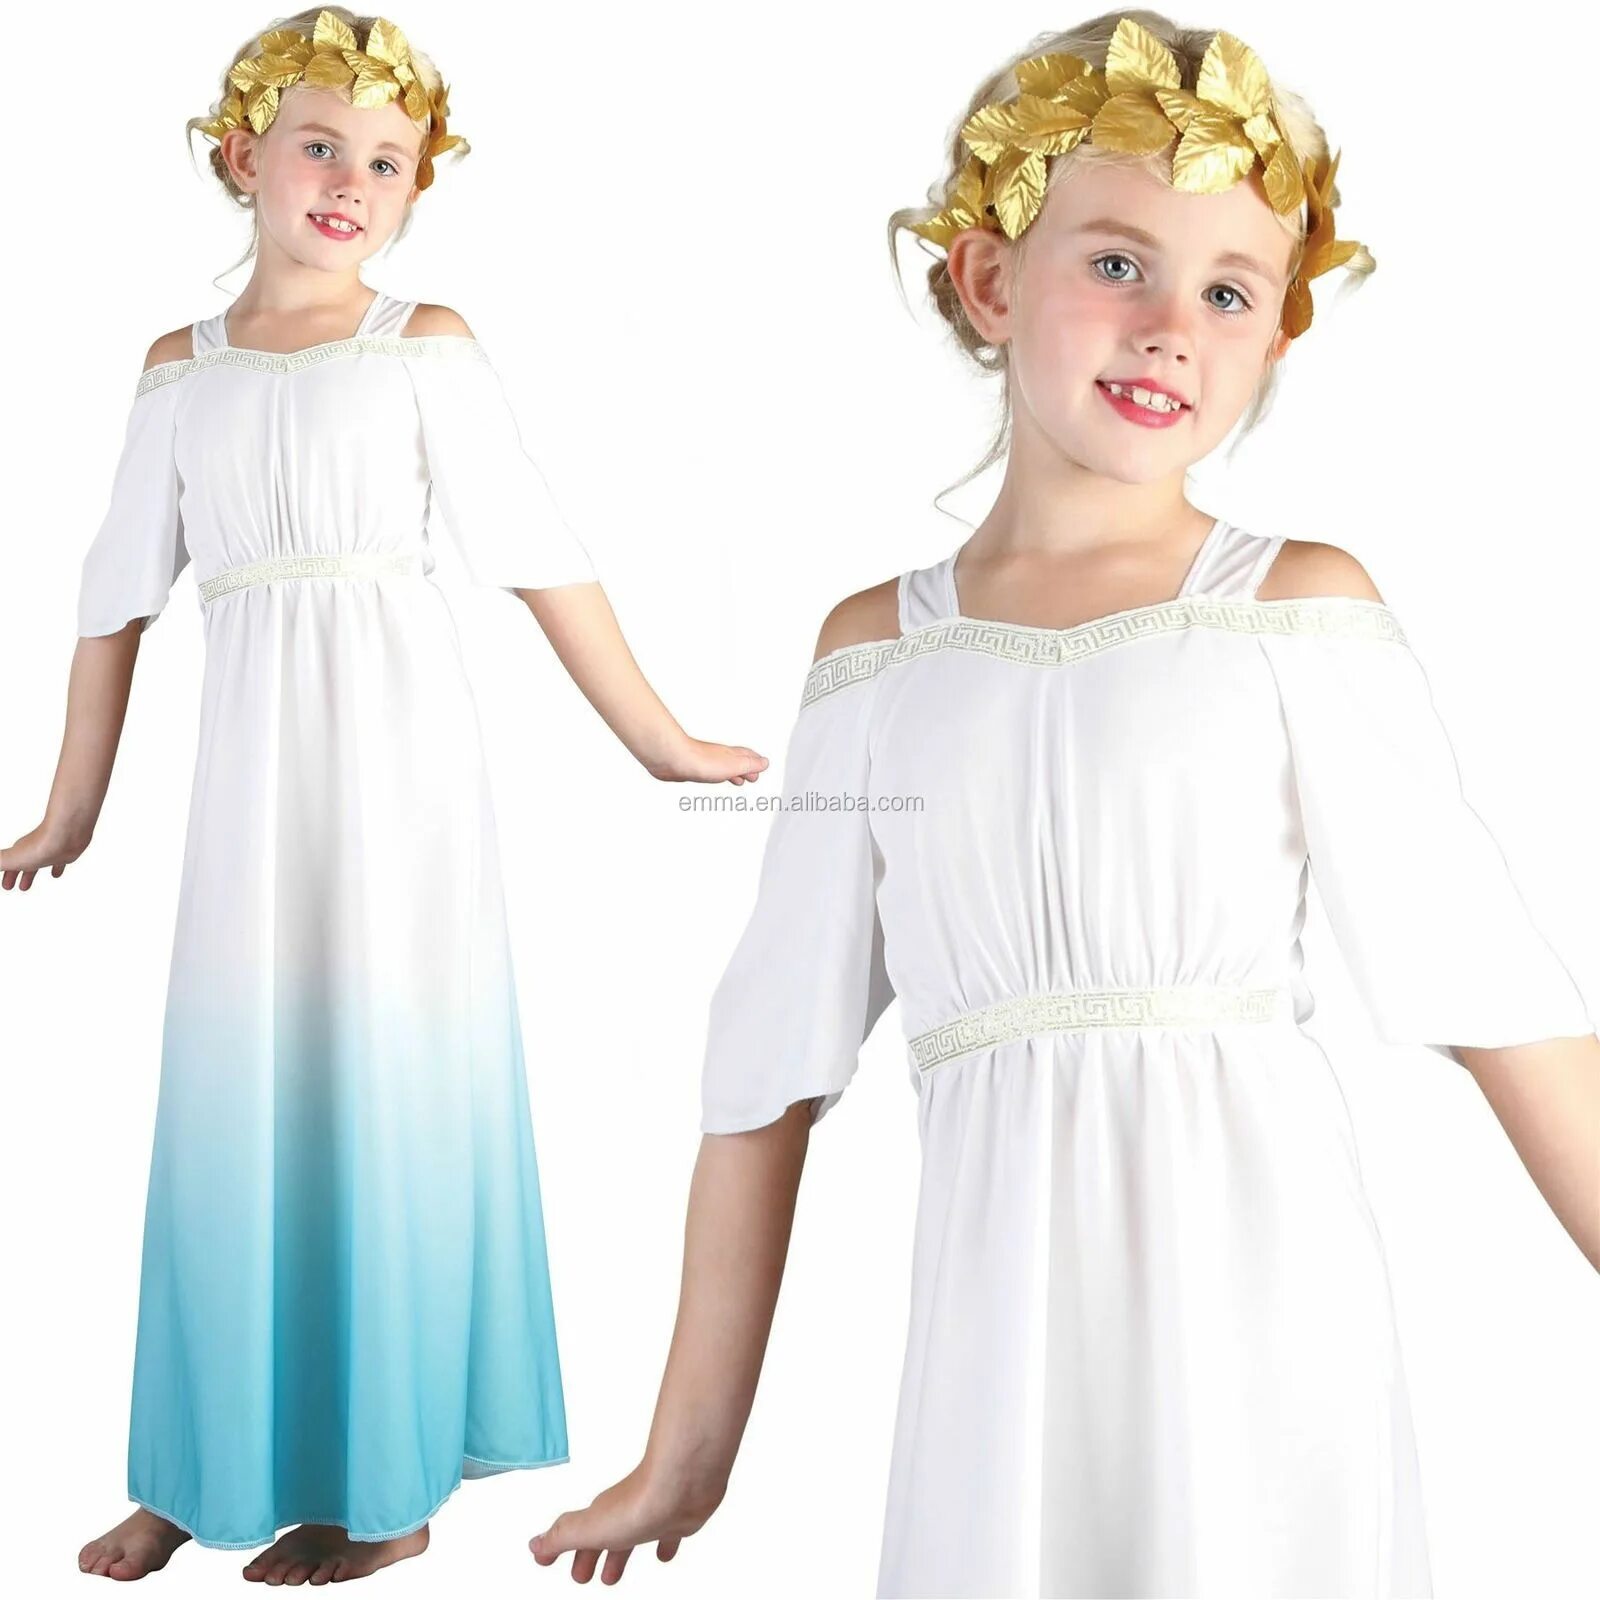 Греческий для детей. Детское платье в греческом стиле. Греческое платье для девочки. Греческий наряд детский. Греческие костюмы для детей.